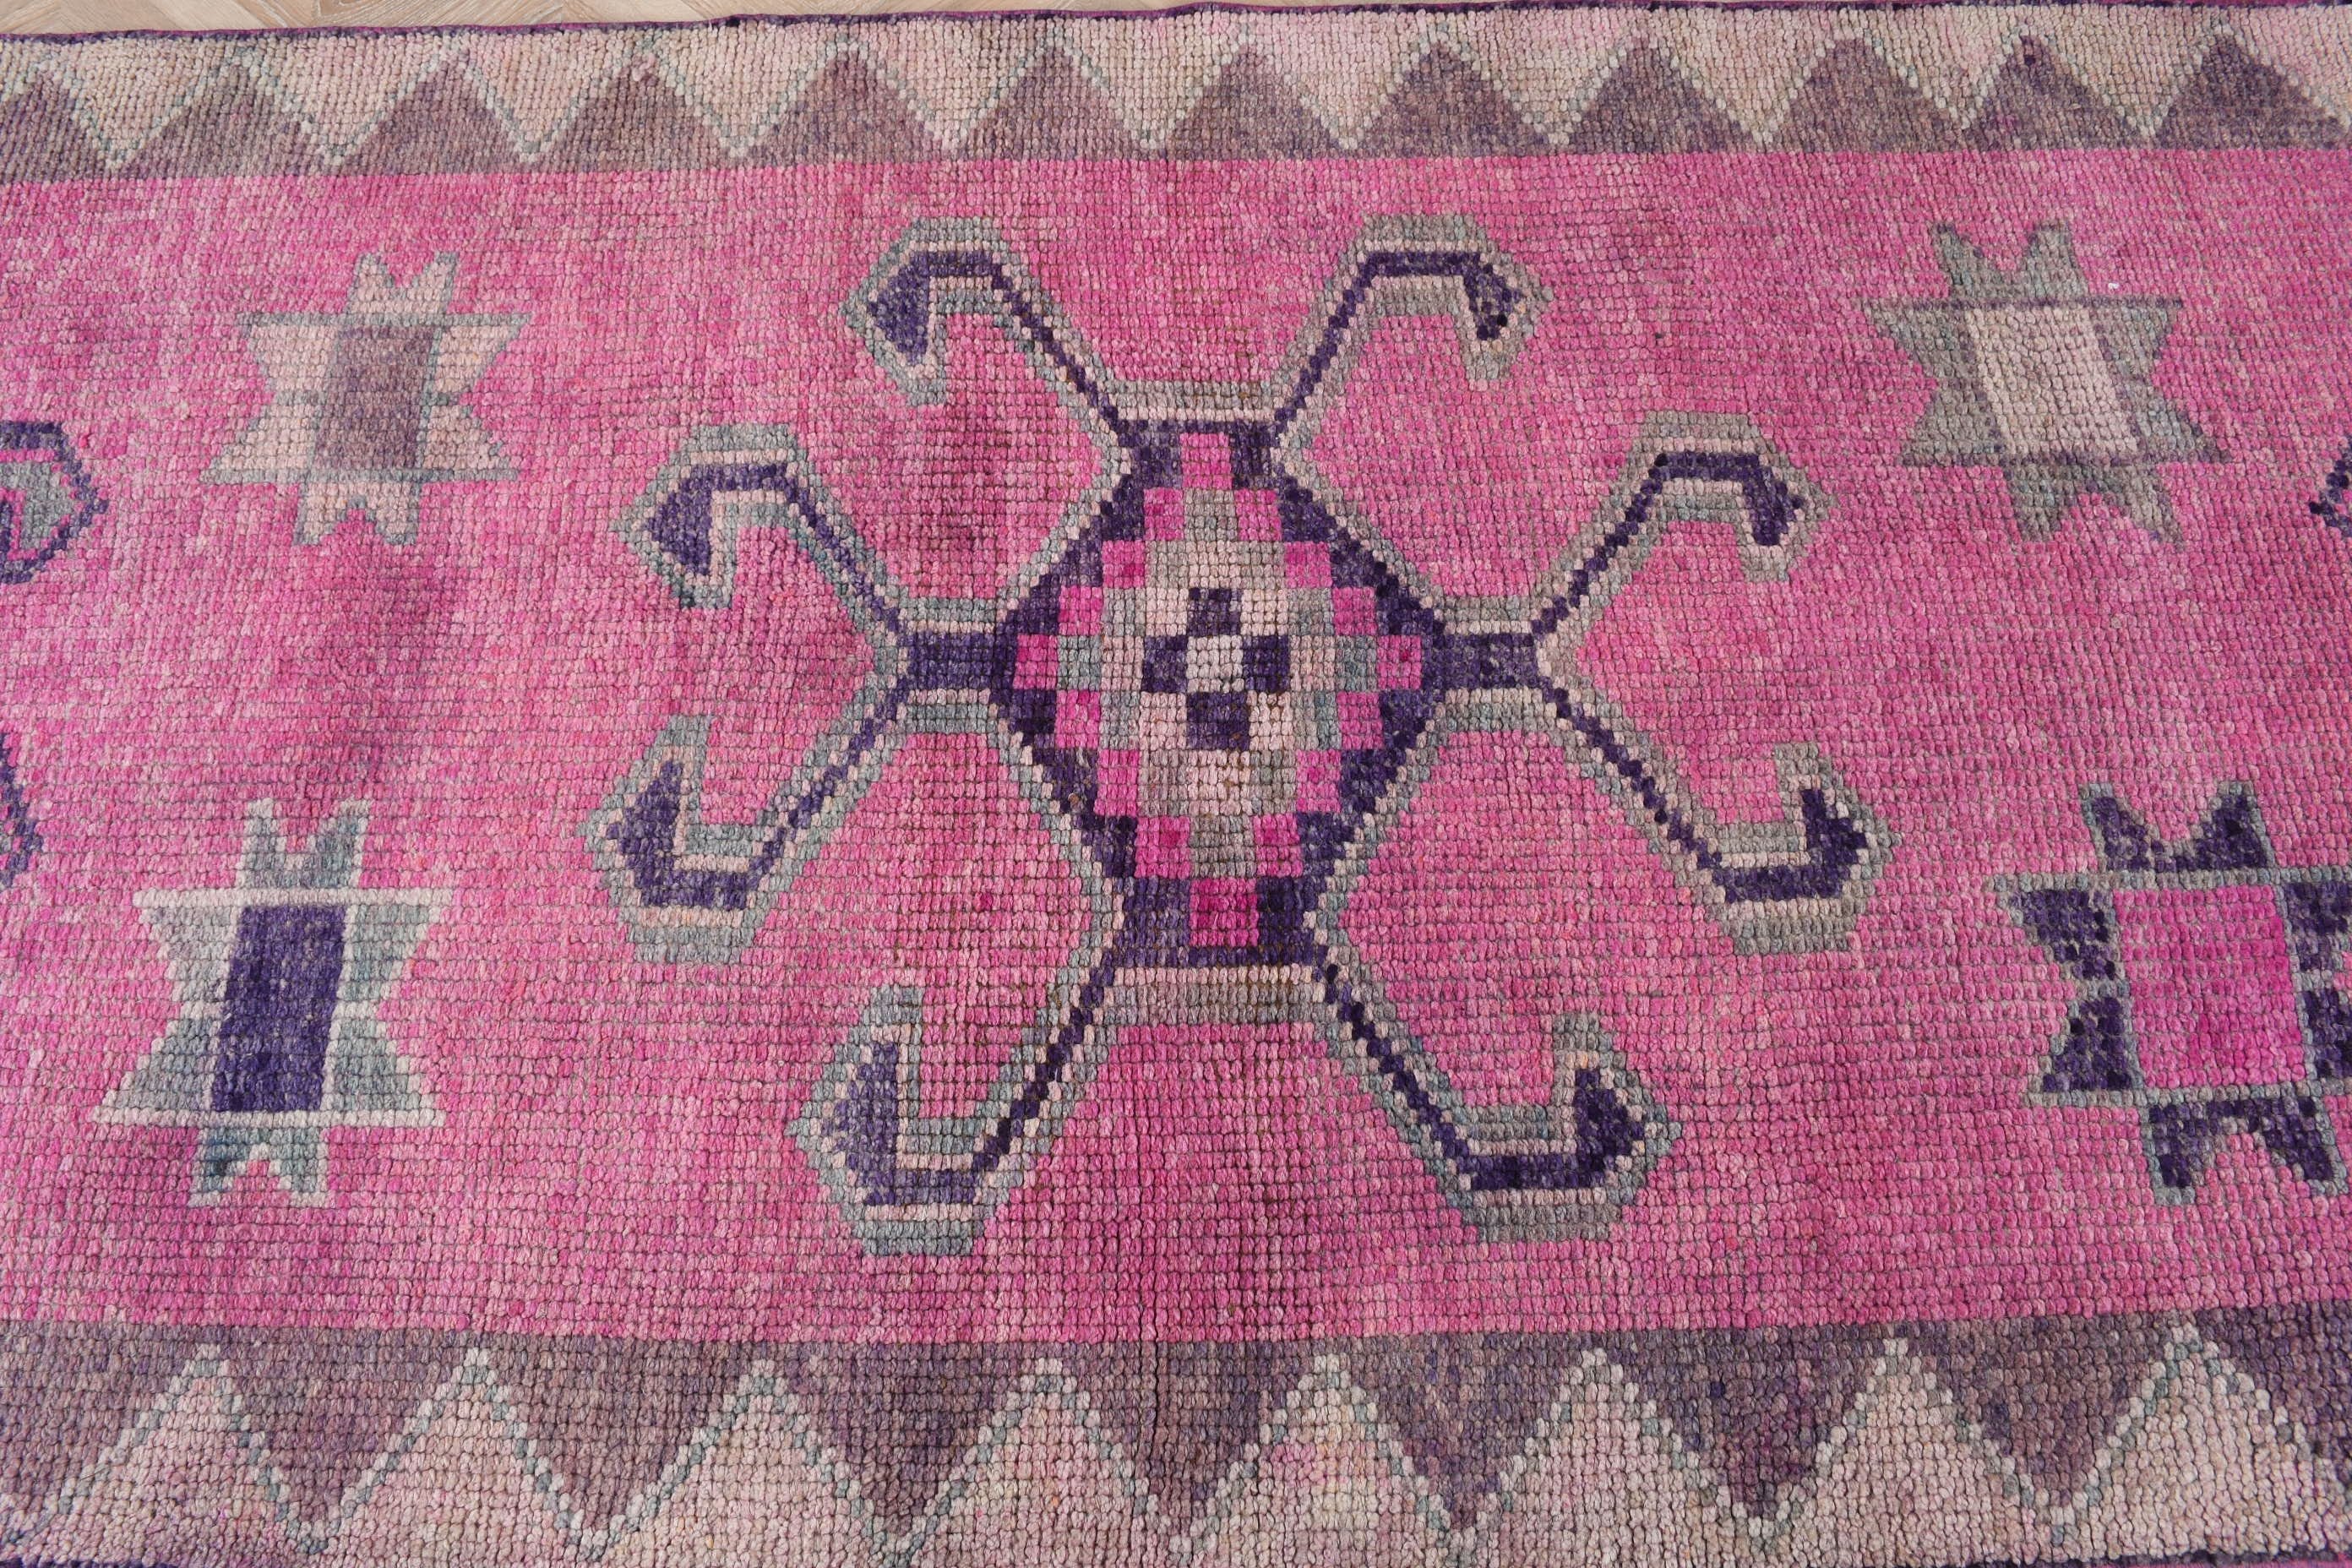 3.4x11.5 ft Runner Rugs, Vintage Rug, Stair Rug, Turkish Rugs, Bedroom Rug, Designer Rug, Wool Rug, Rugs for Kitchen, Pink Anatolian Rugs